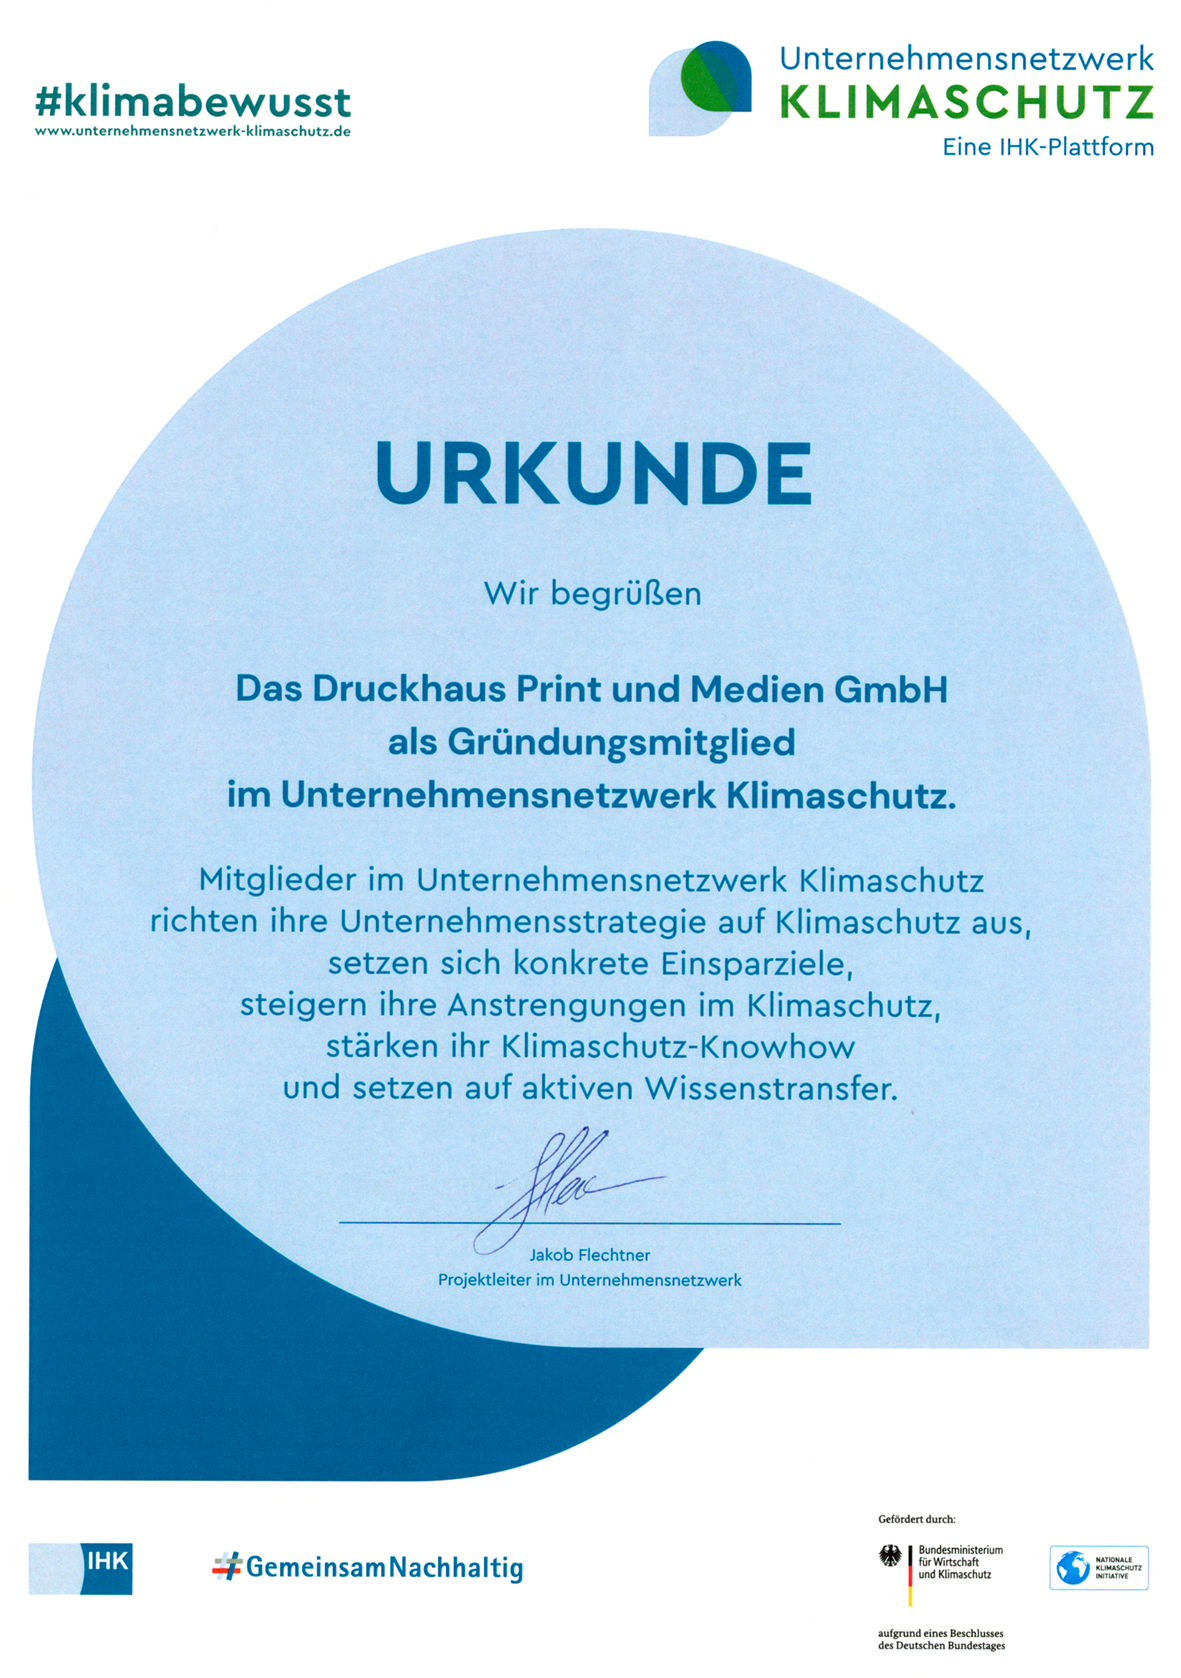 Urkunde Unternehmensnetzwerk Klimaschutz